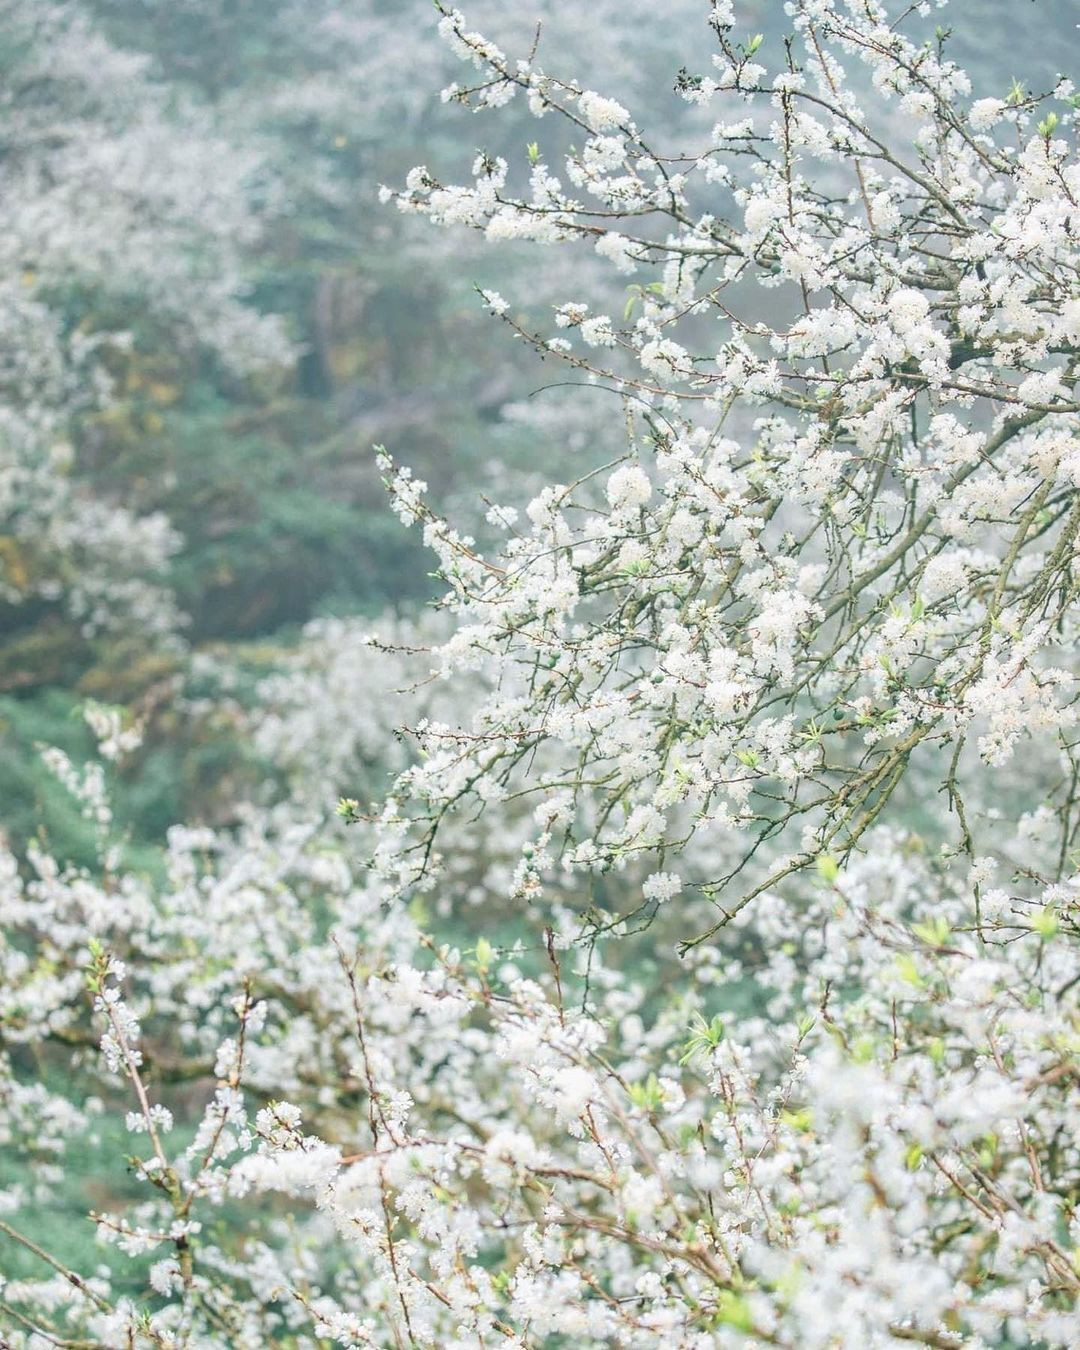 Mùa hoa: Mê mẩn ngắm ‘bông tuyết trắng’ nở rợp trời rẻo cao ảo diệu như cõi tiên - 3